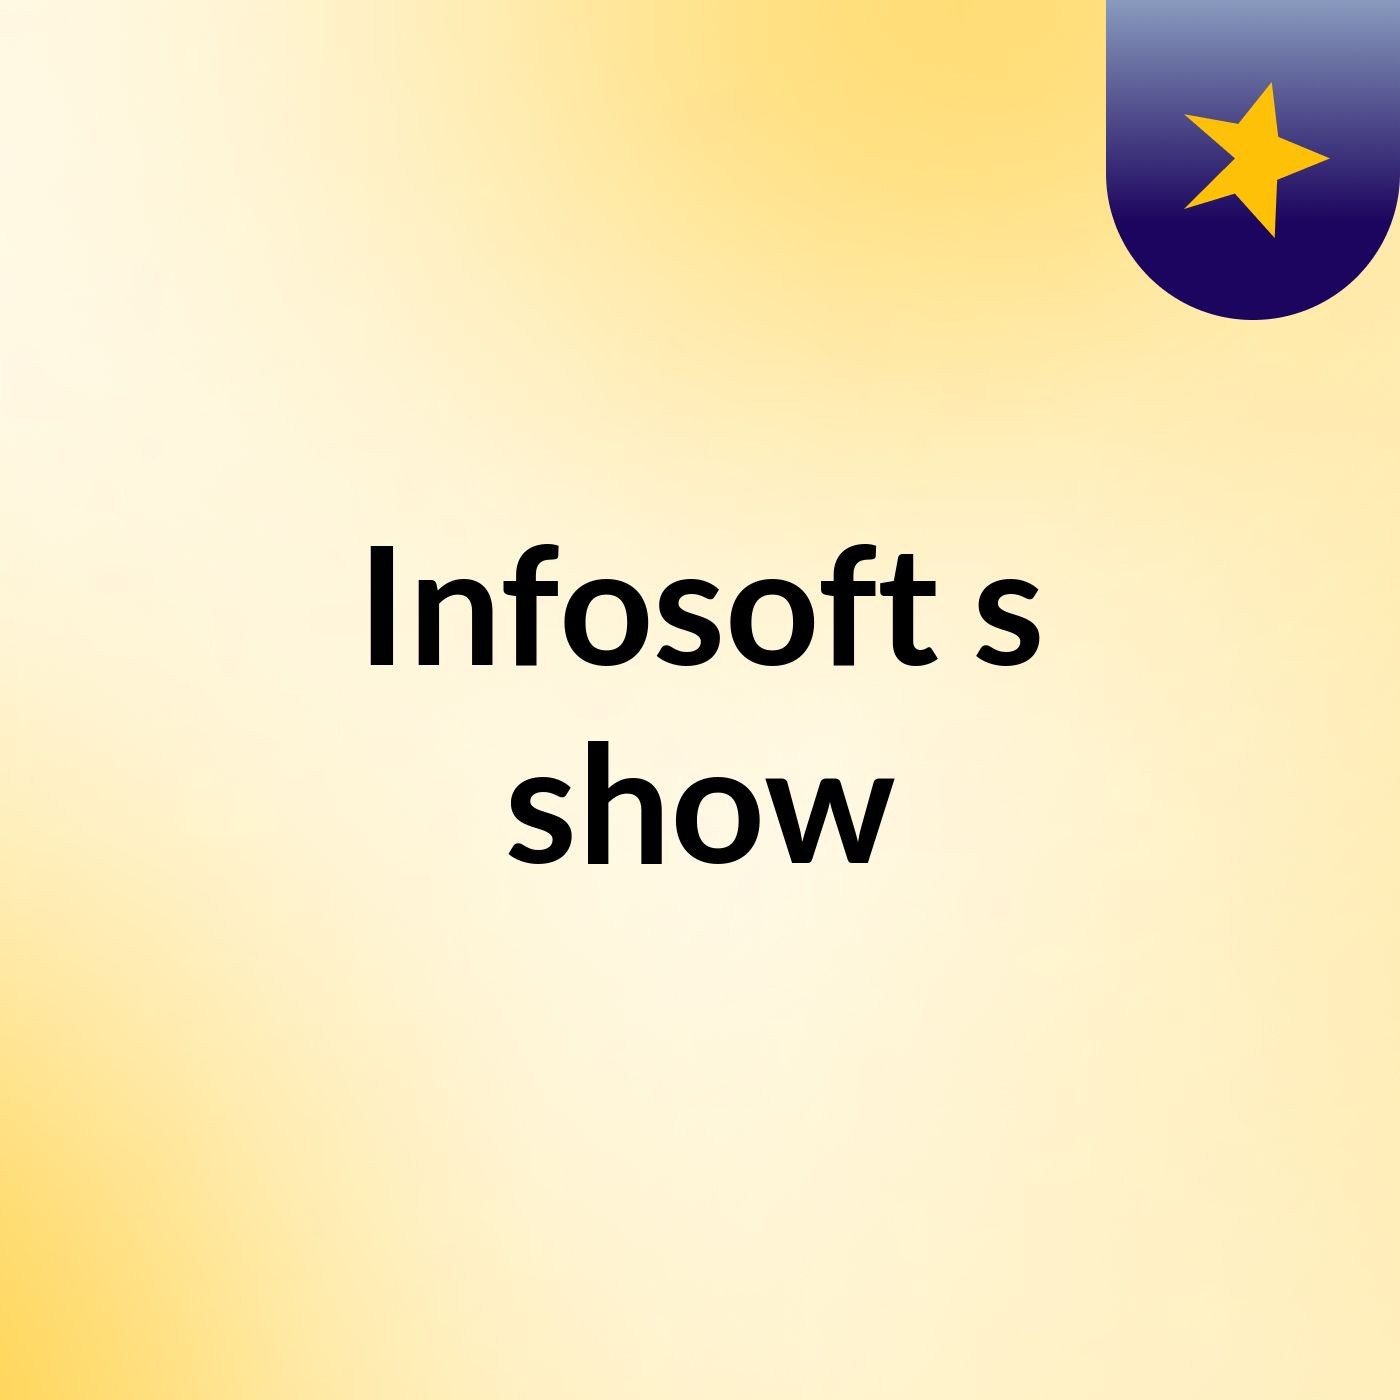 Infosoft's show